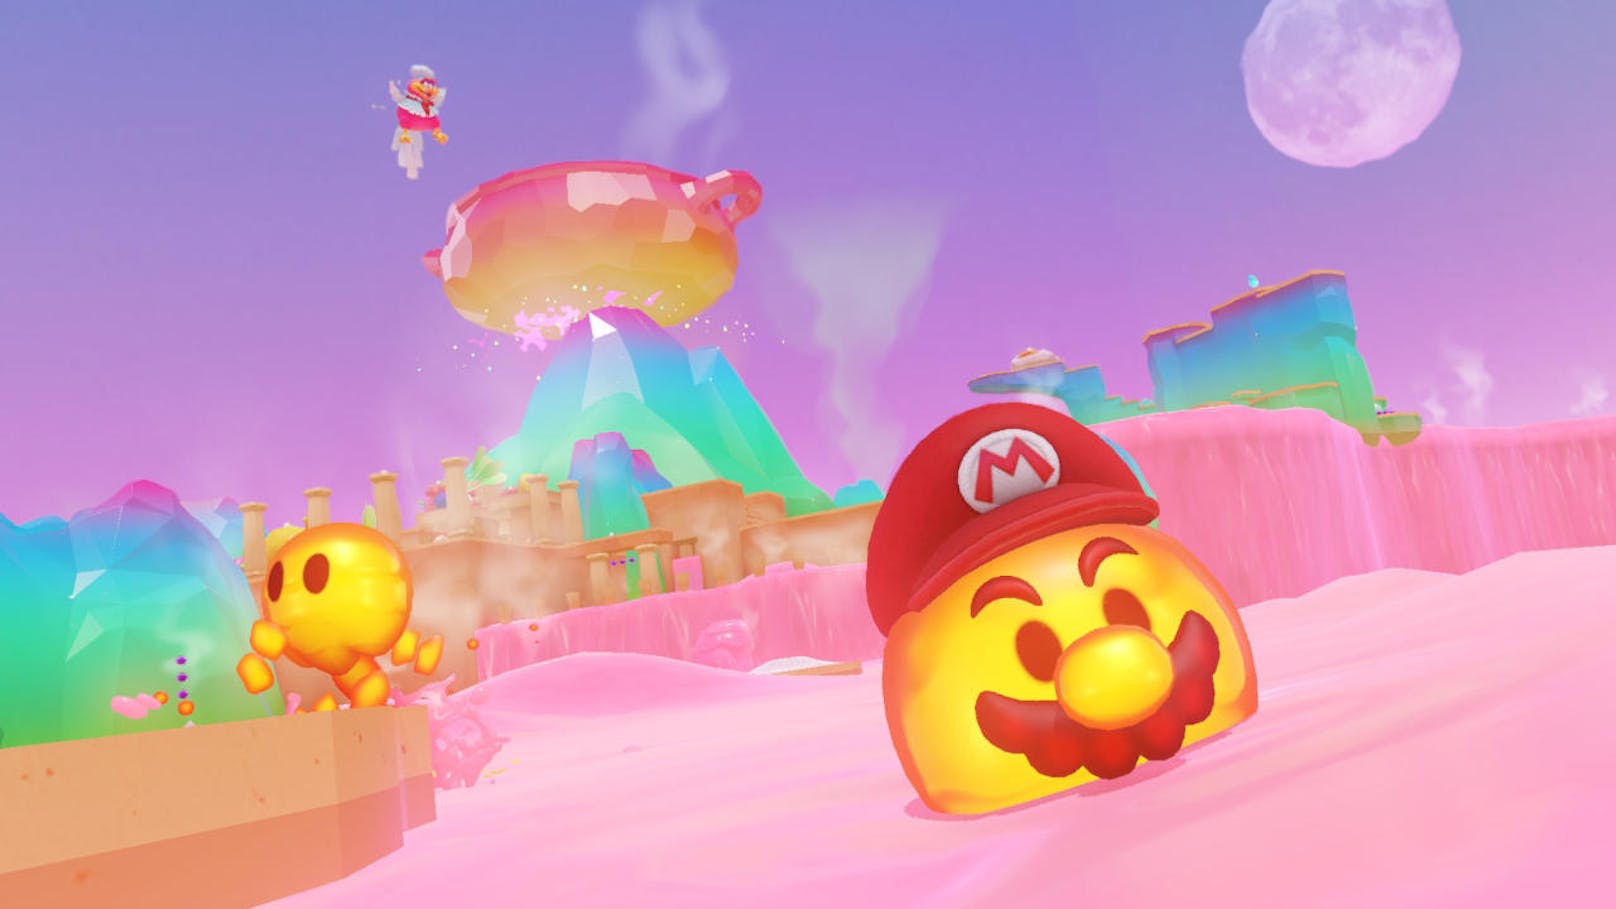 Dieses Hut-Schmeißen und Verwandeln will einfach nicht langweilig werden. Im Schlemmerland etwa verbrennt sich Mario an der heißen Lava, kann aber einen Feuerball-Feind "capern" (so nennt Nintendo die Verwandlung) und infolge durch die heiße Lava schwimmen und springen.